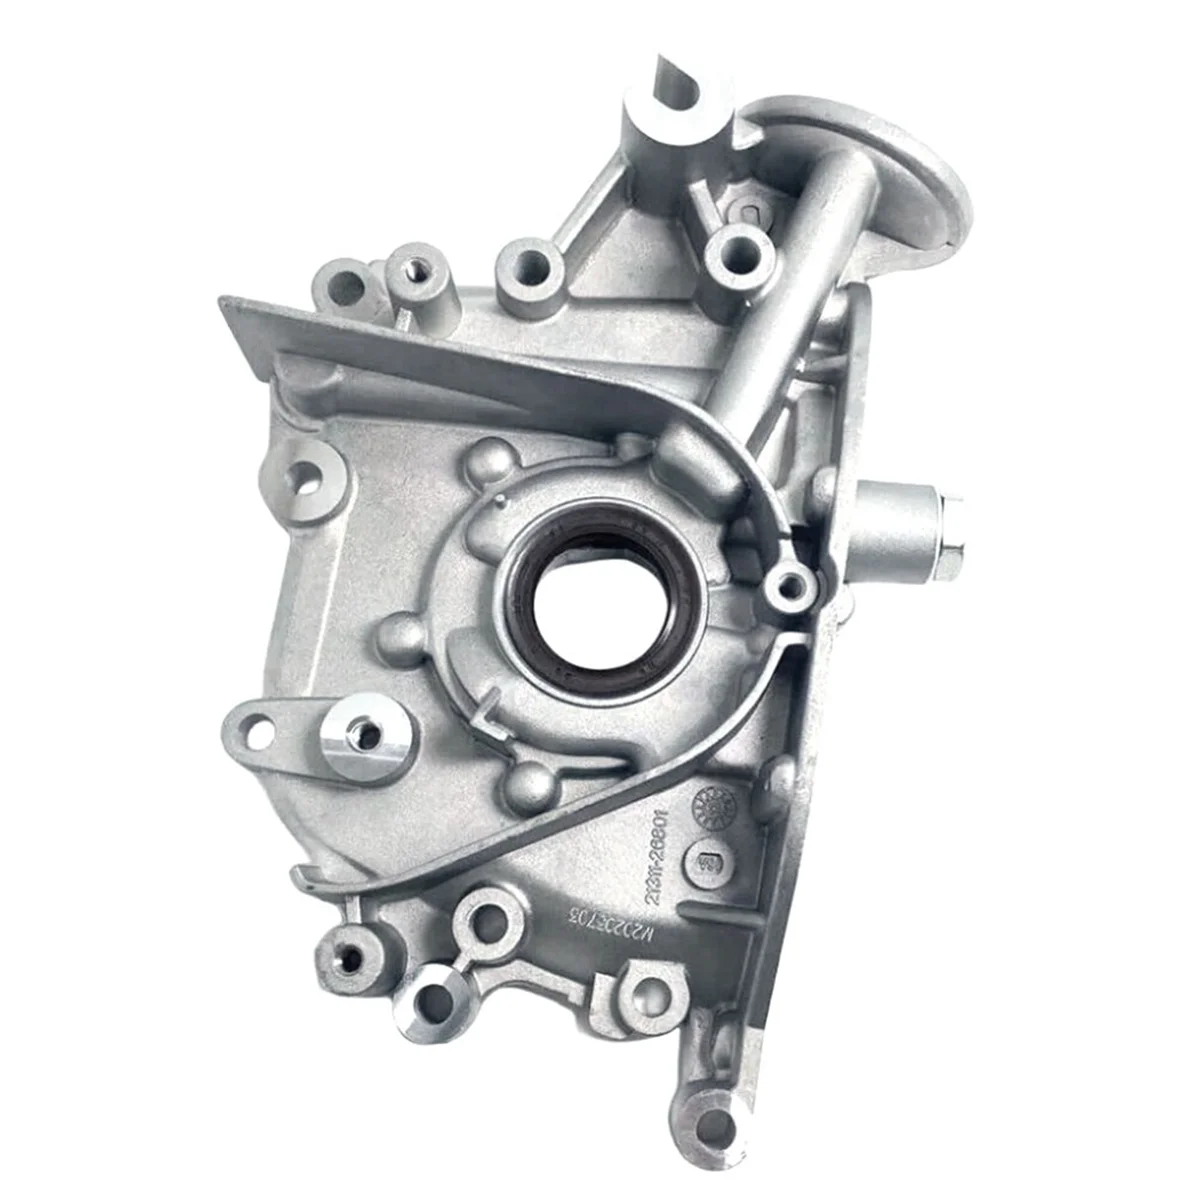 

2131026650 Engine Oil Pump for Hyundai ACCESS II Kia CERATO 21310-26801 21310-26800 21310-26800 21310-26802 21310-26020